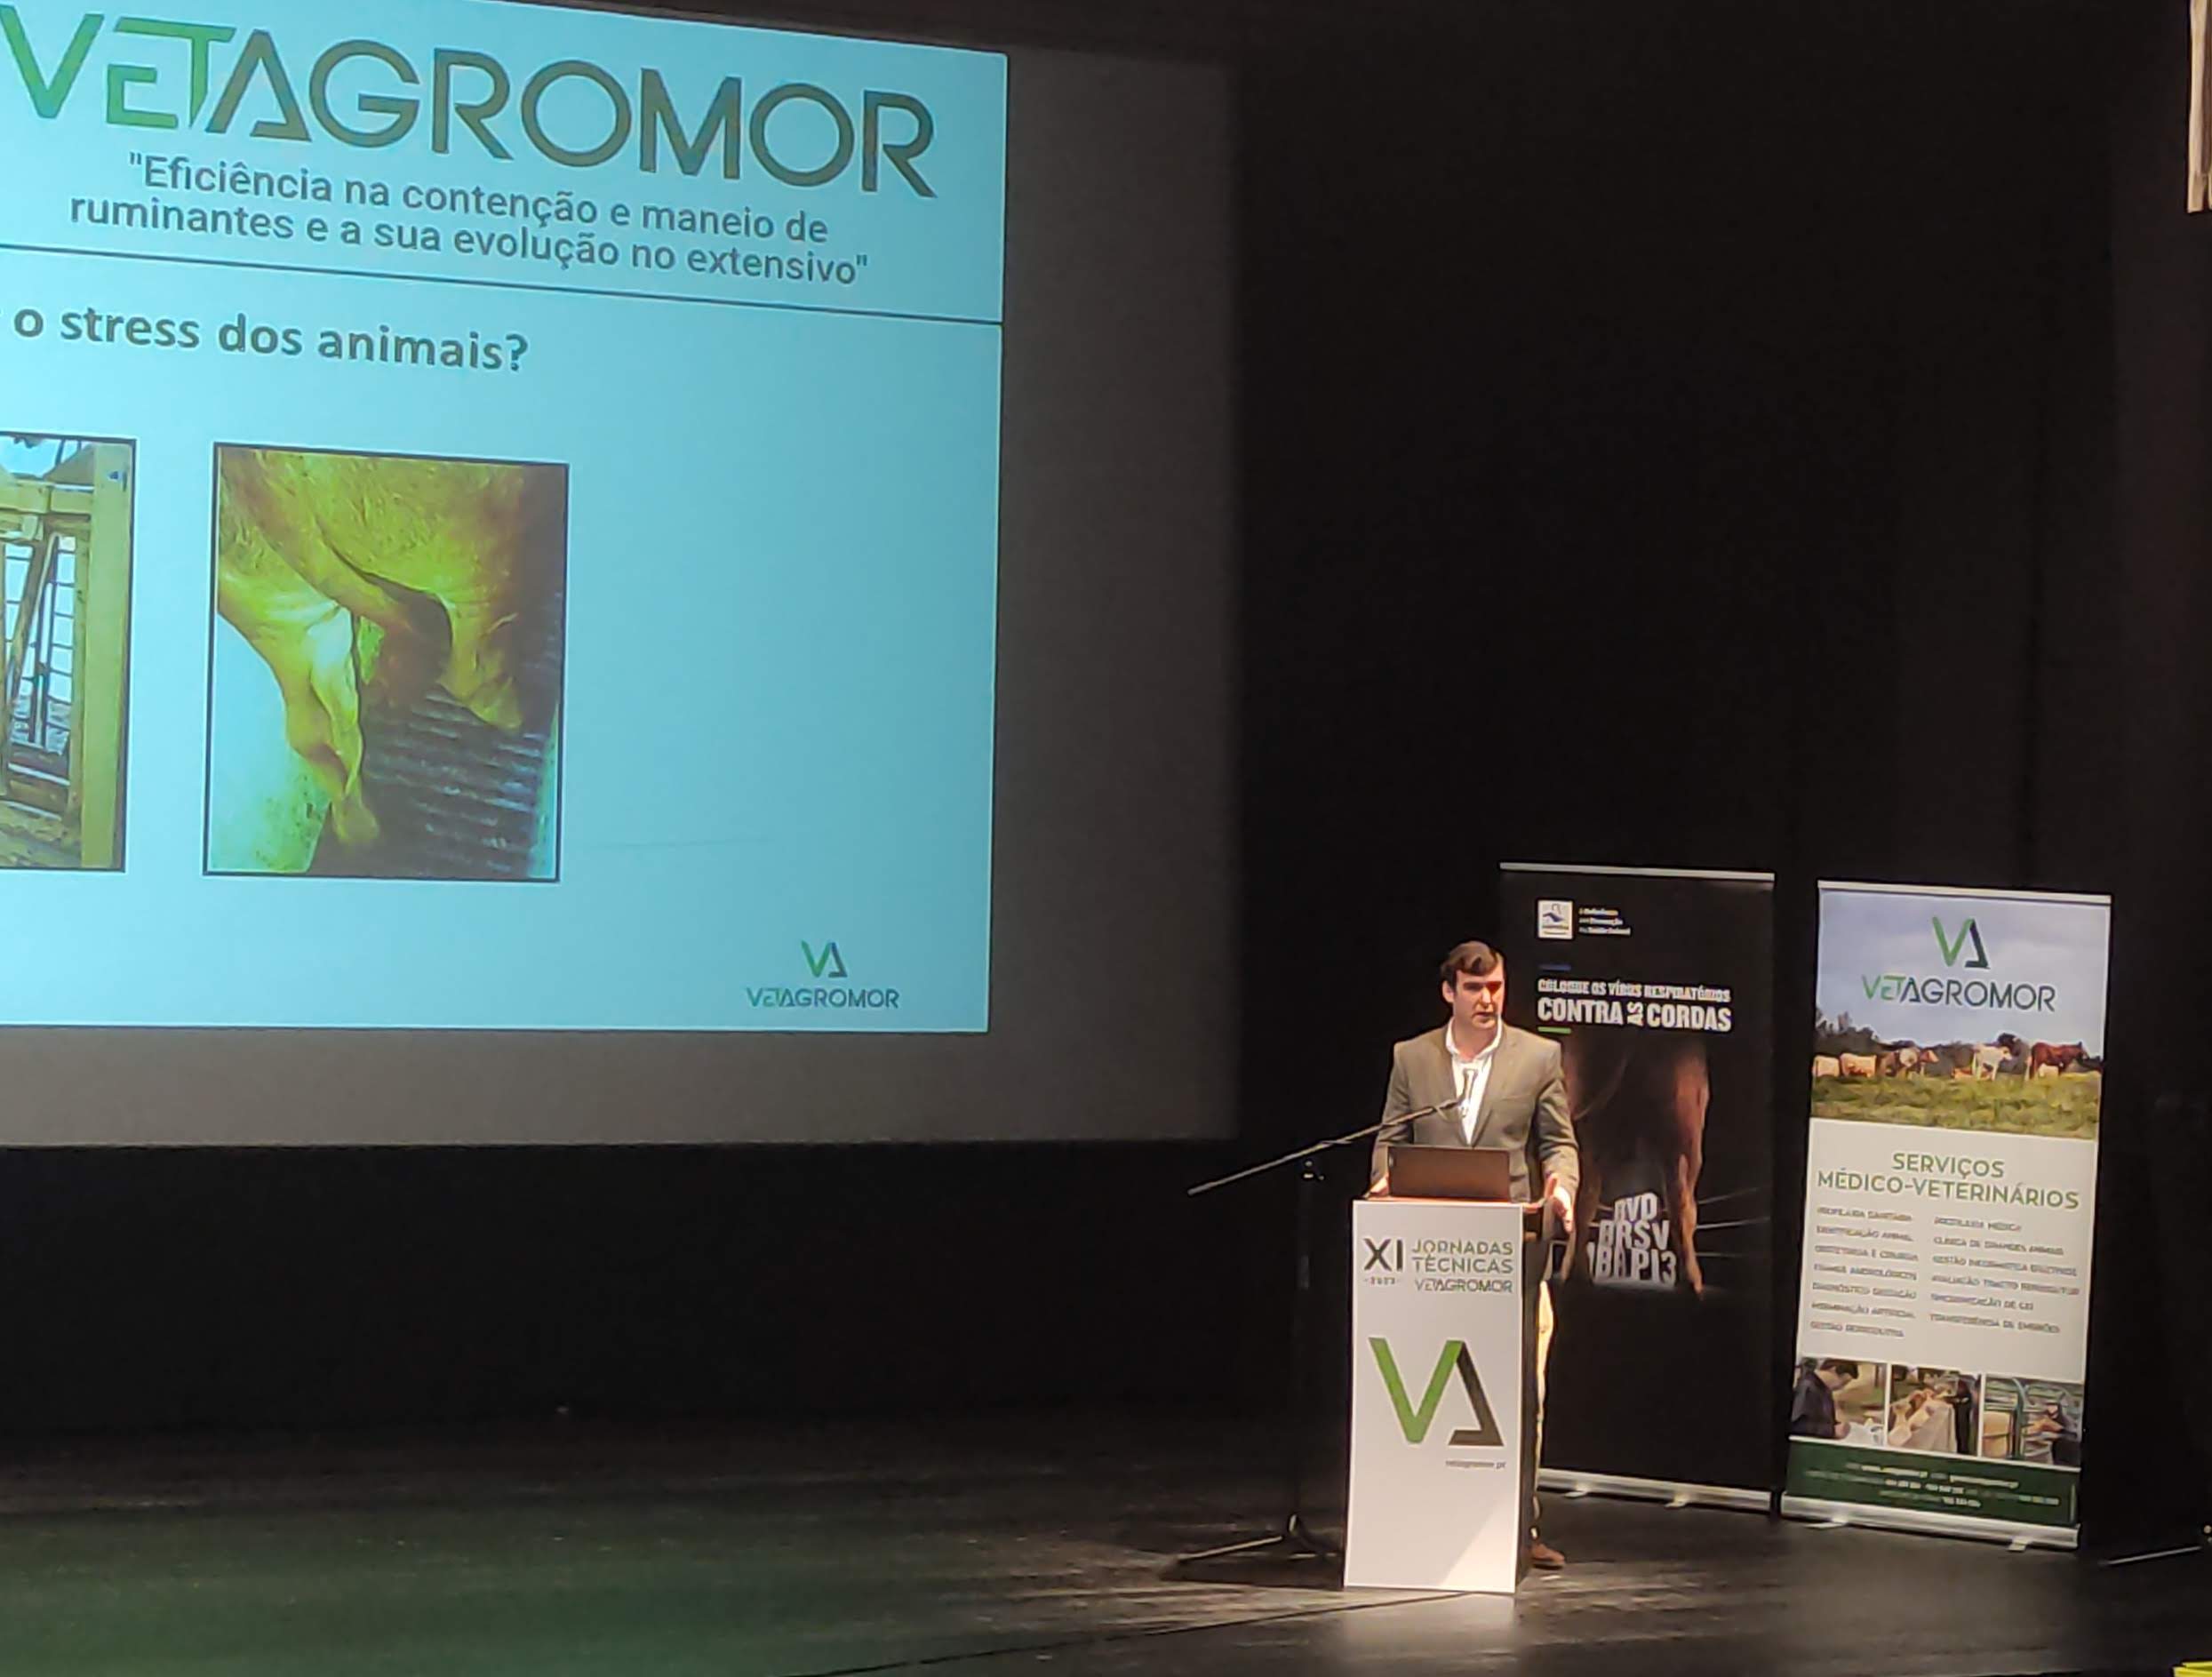 Meeting das XI Jornadas Técnicas da Vetagromor promoveu discussão sobre agricultura no Auditór...